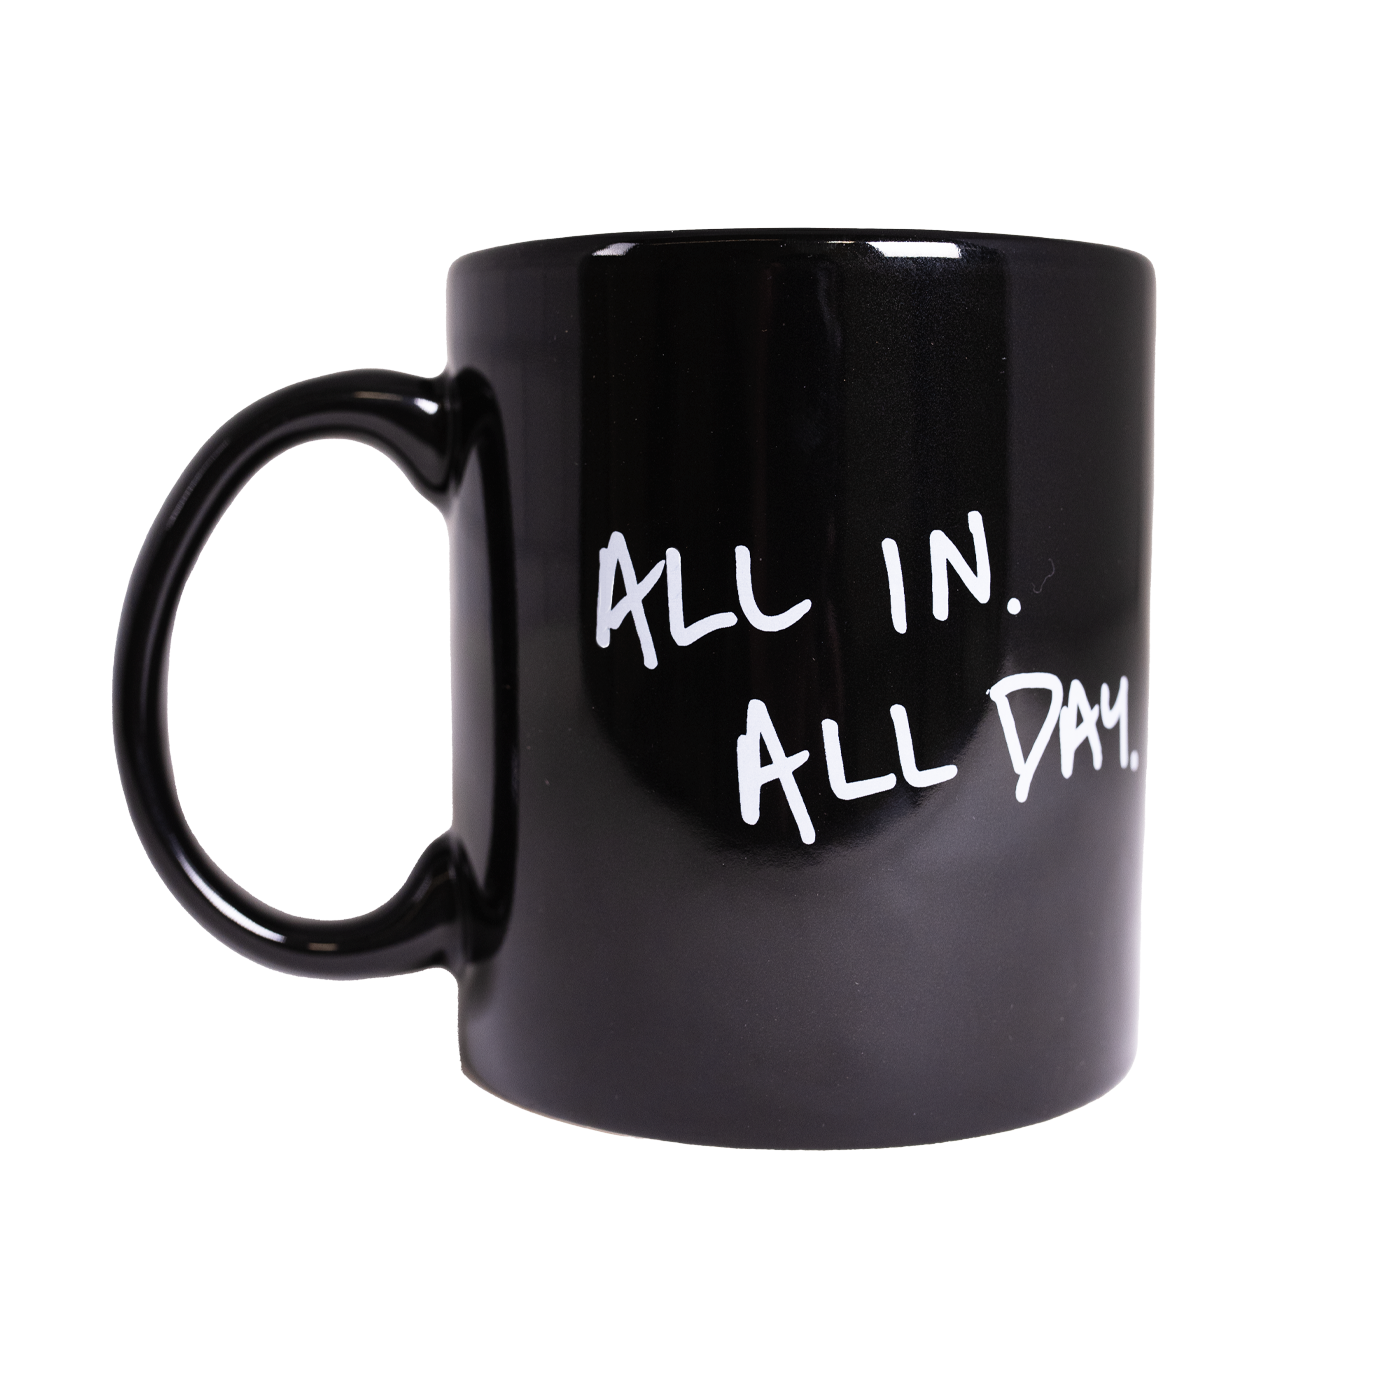 All Day Mug